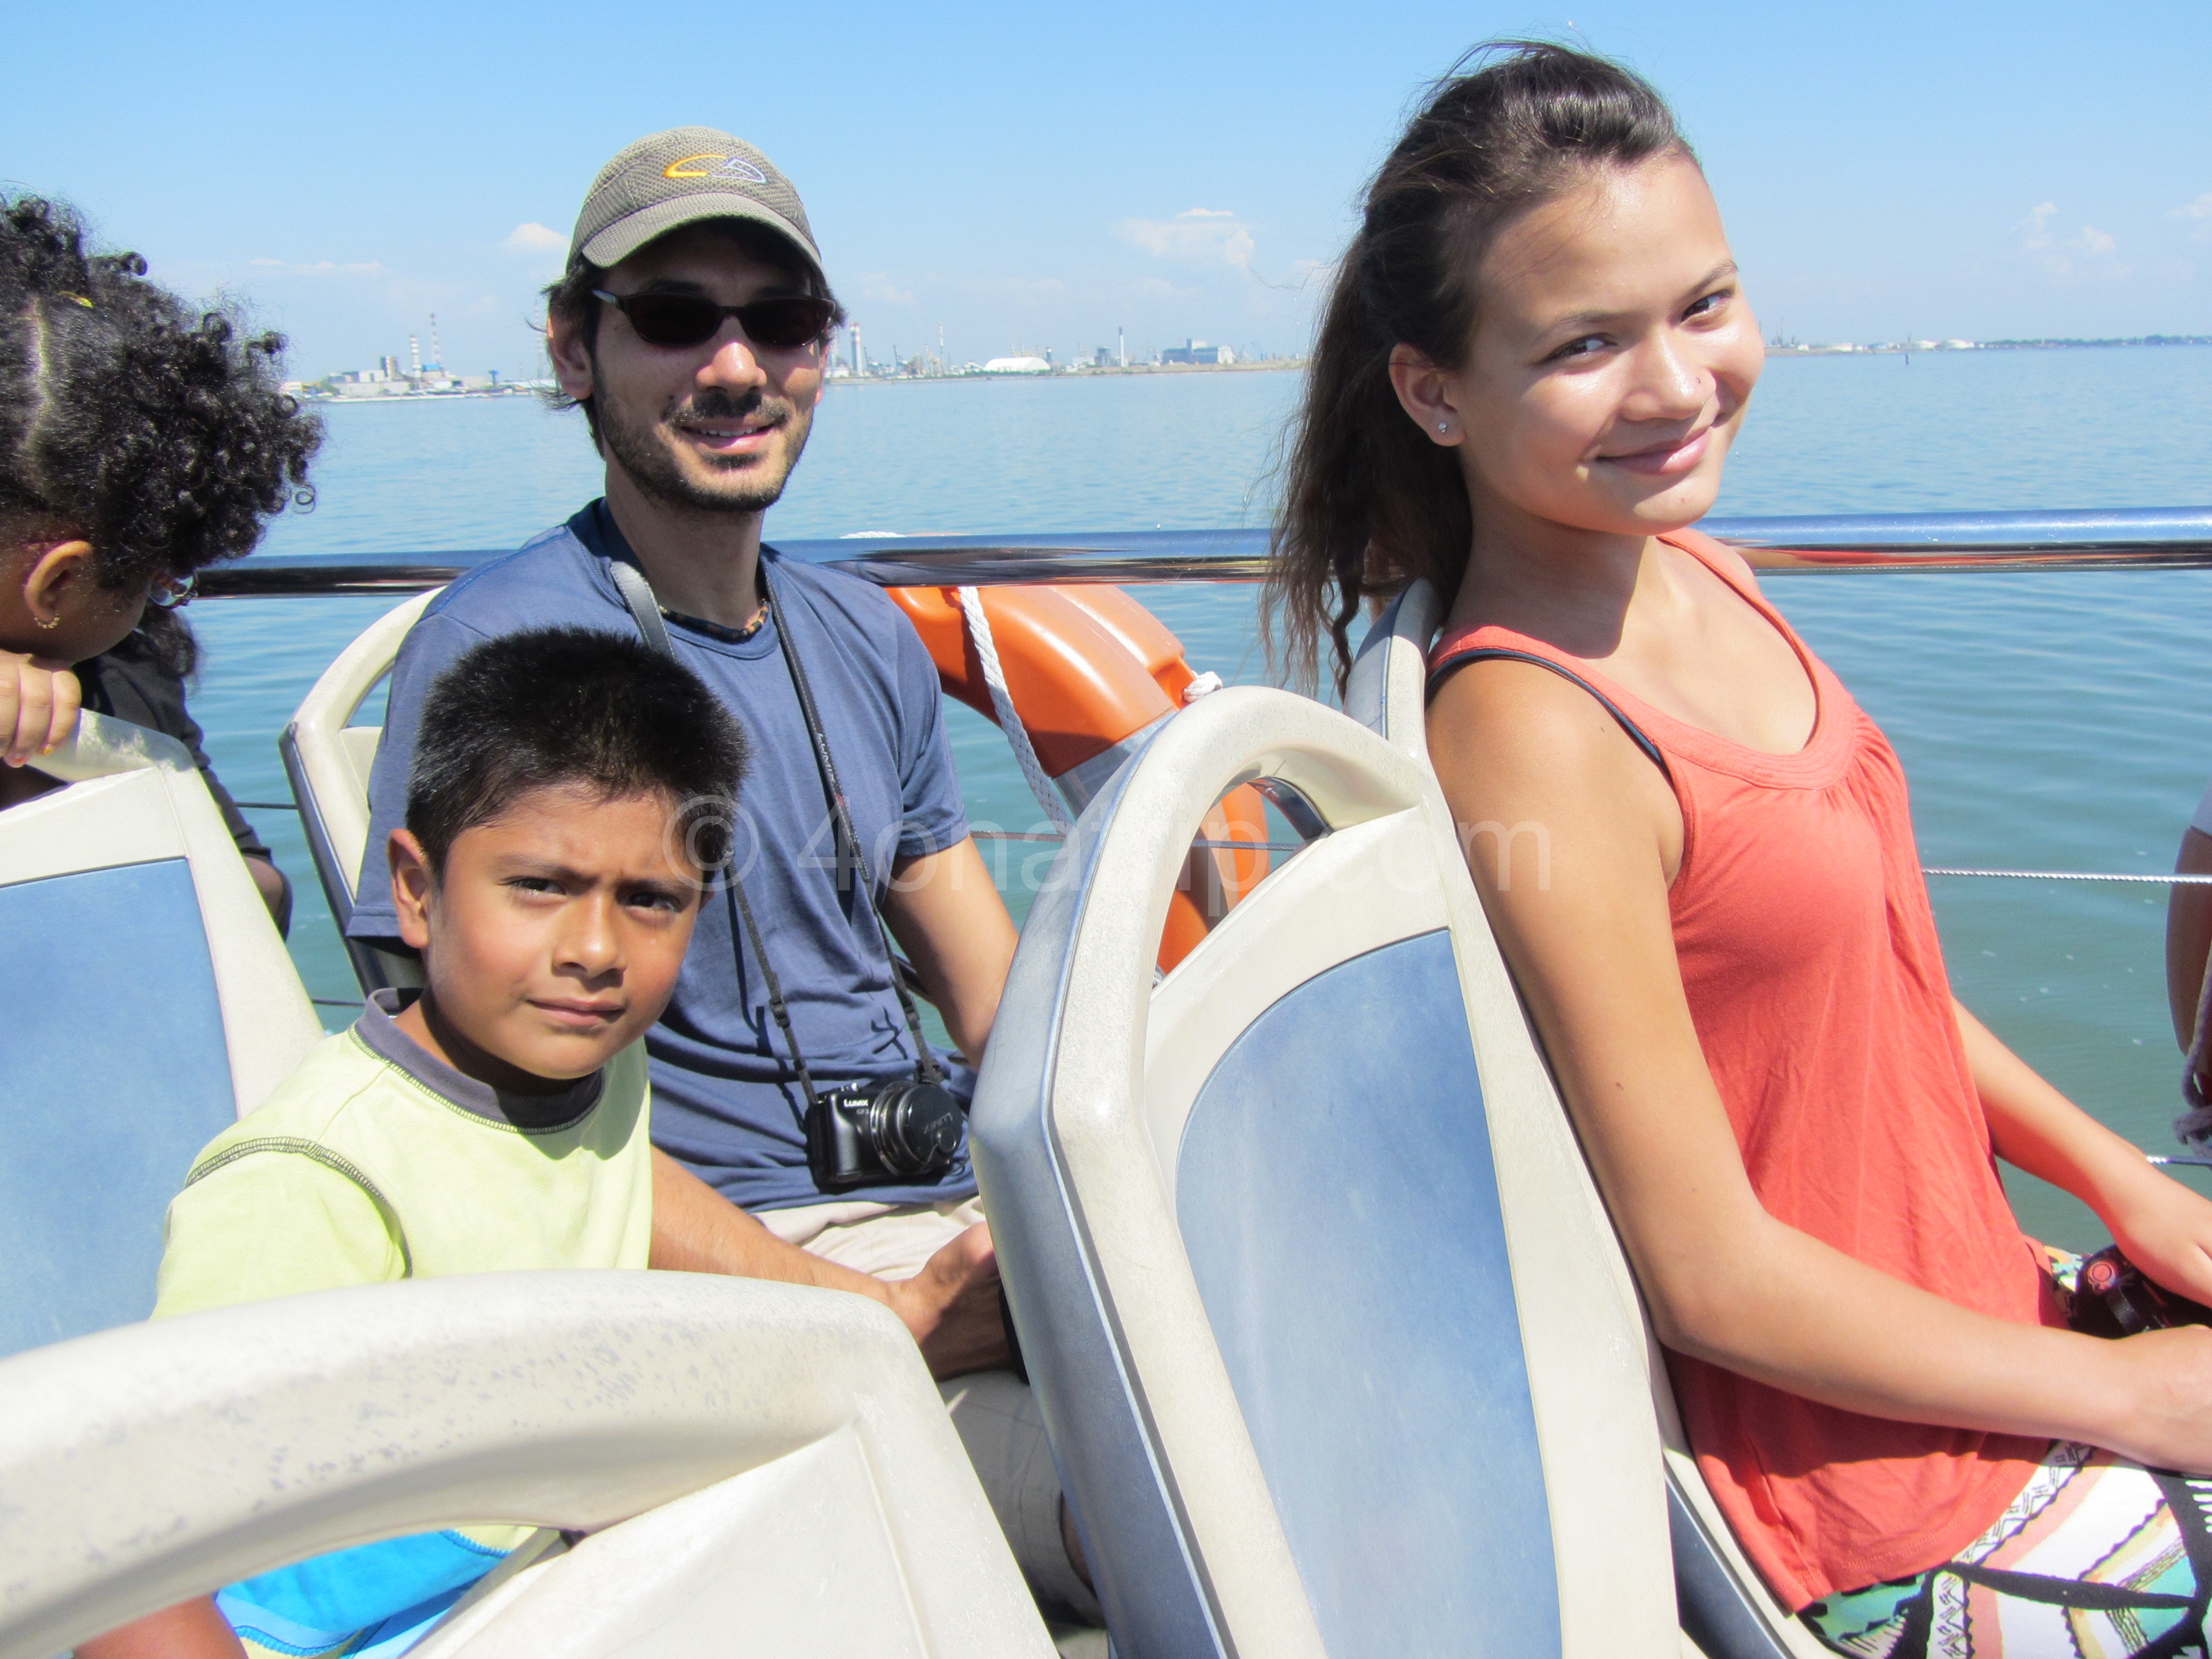 boat ride to Venice, Italy